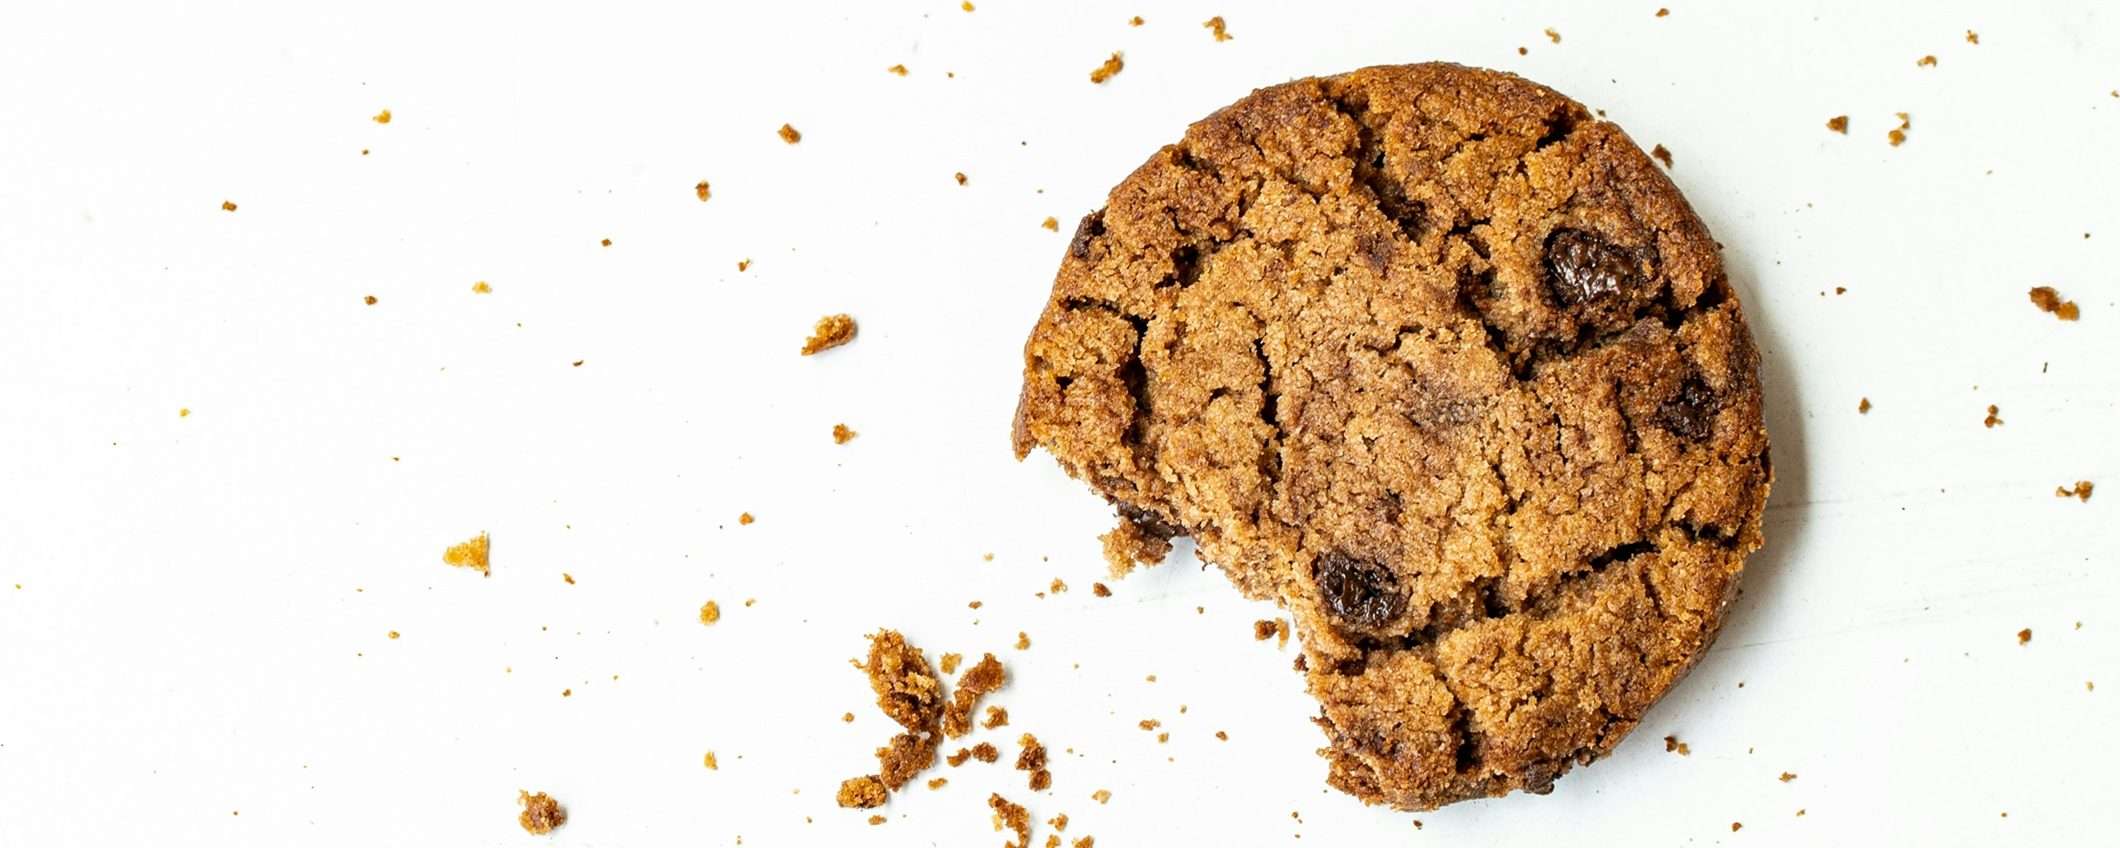 9 siti su 10 non rispettano la scelta sui cookie